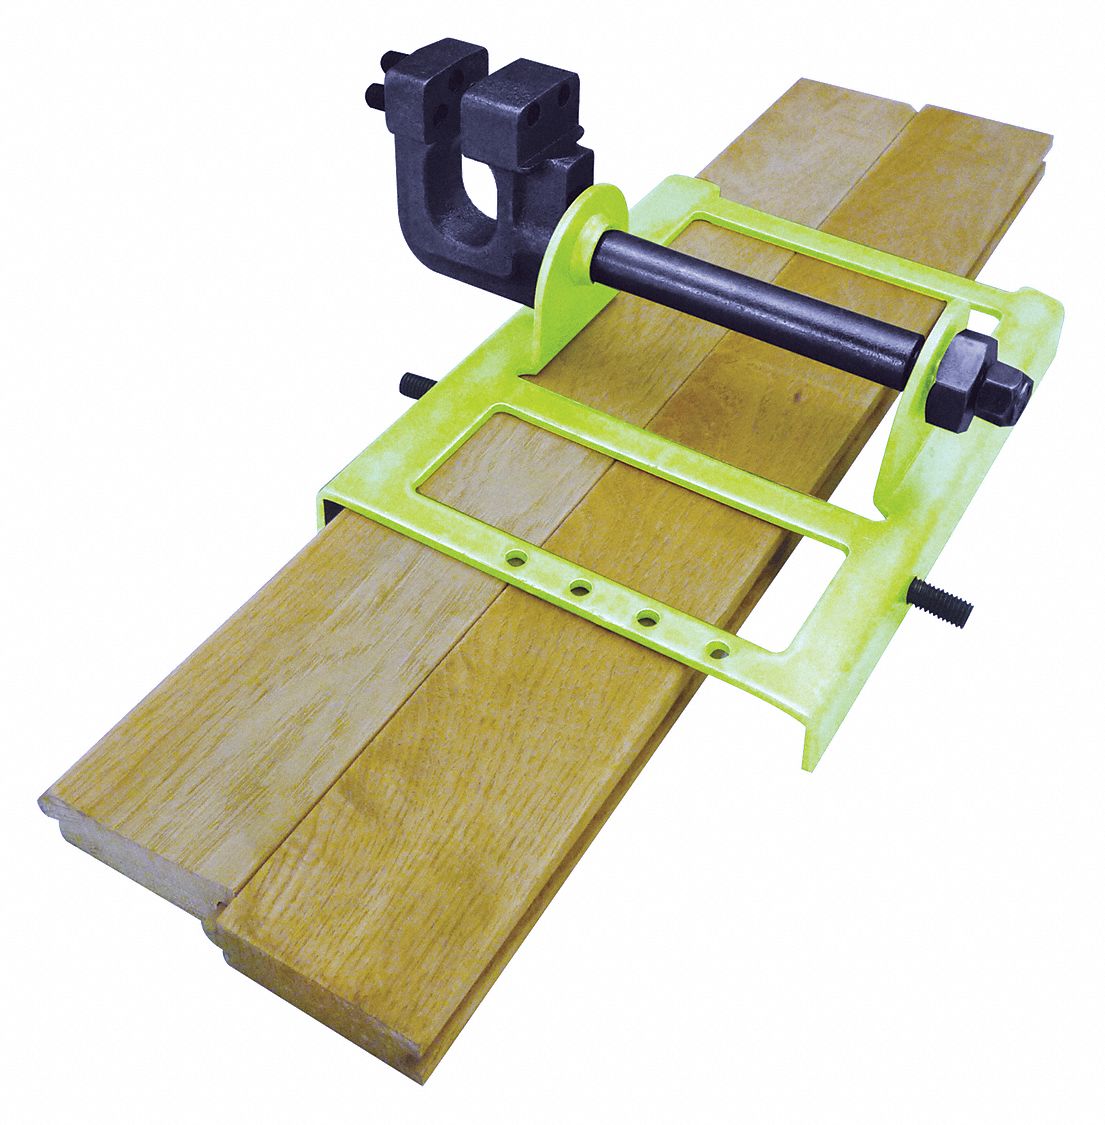 Lumber Cutting Guide: Lumber Cutting Guide